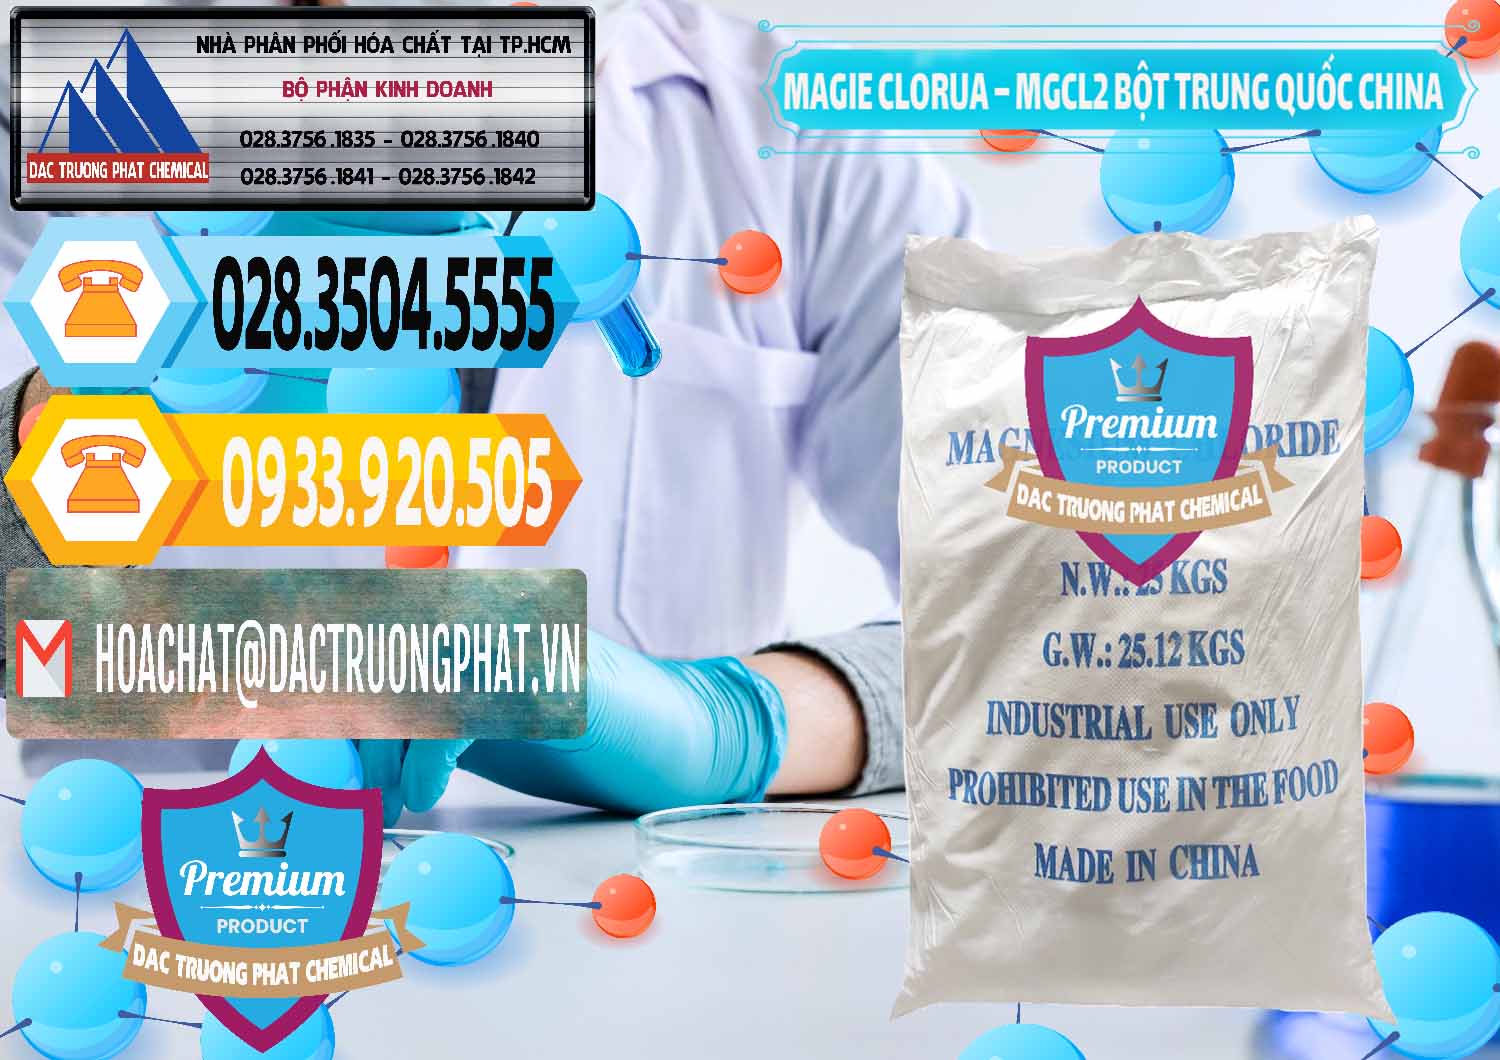 Công ty bán _ cung ứng Magie Clorua – MGCL2 96% Dạng Bột Bao Chữ Xanh Trung Quốc China - 0207 - Cty cung ứng & phân phối hóa chất tại TP.HCM - hoachattayrua.net